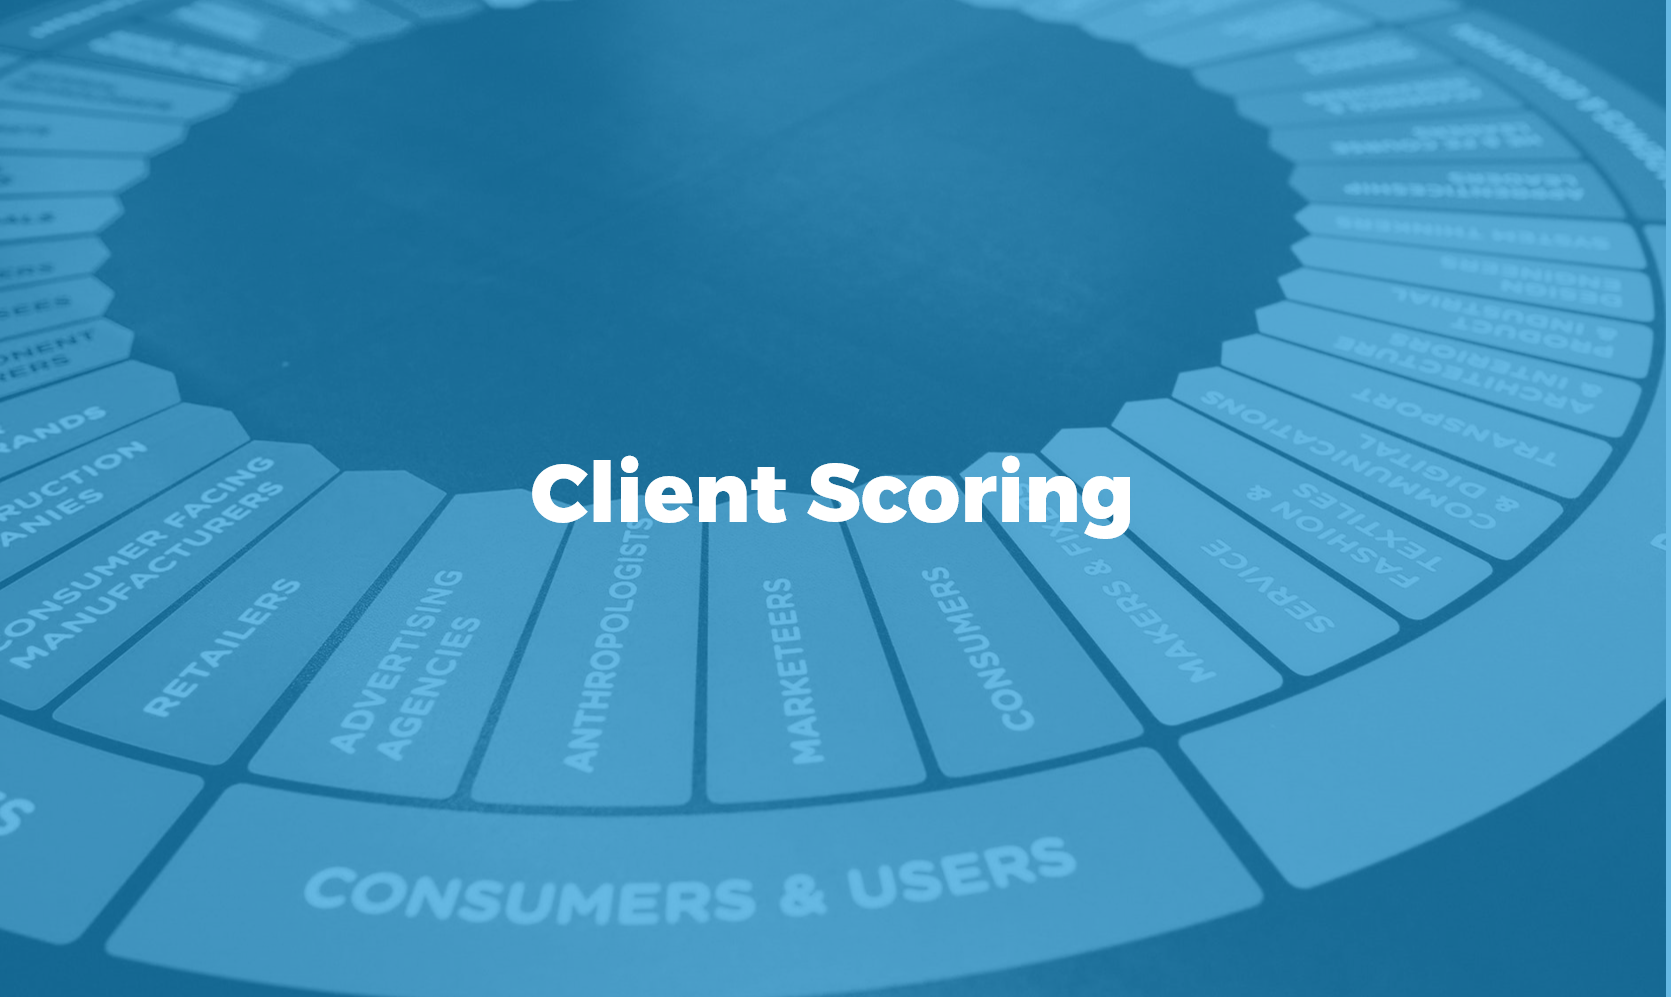 Client scoring